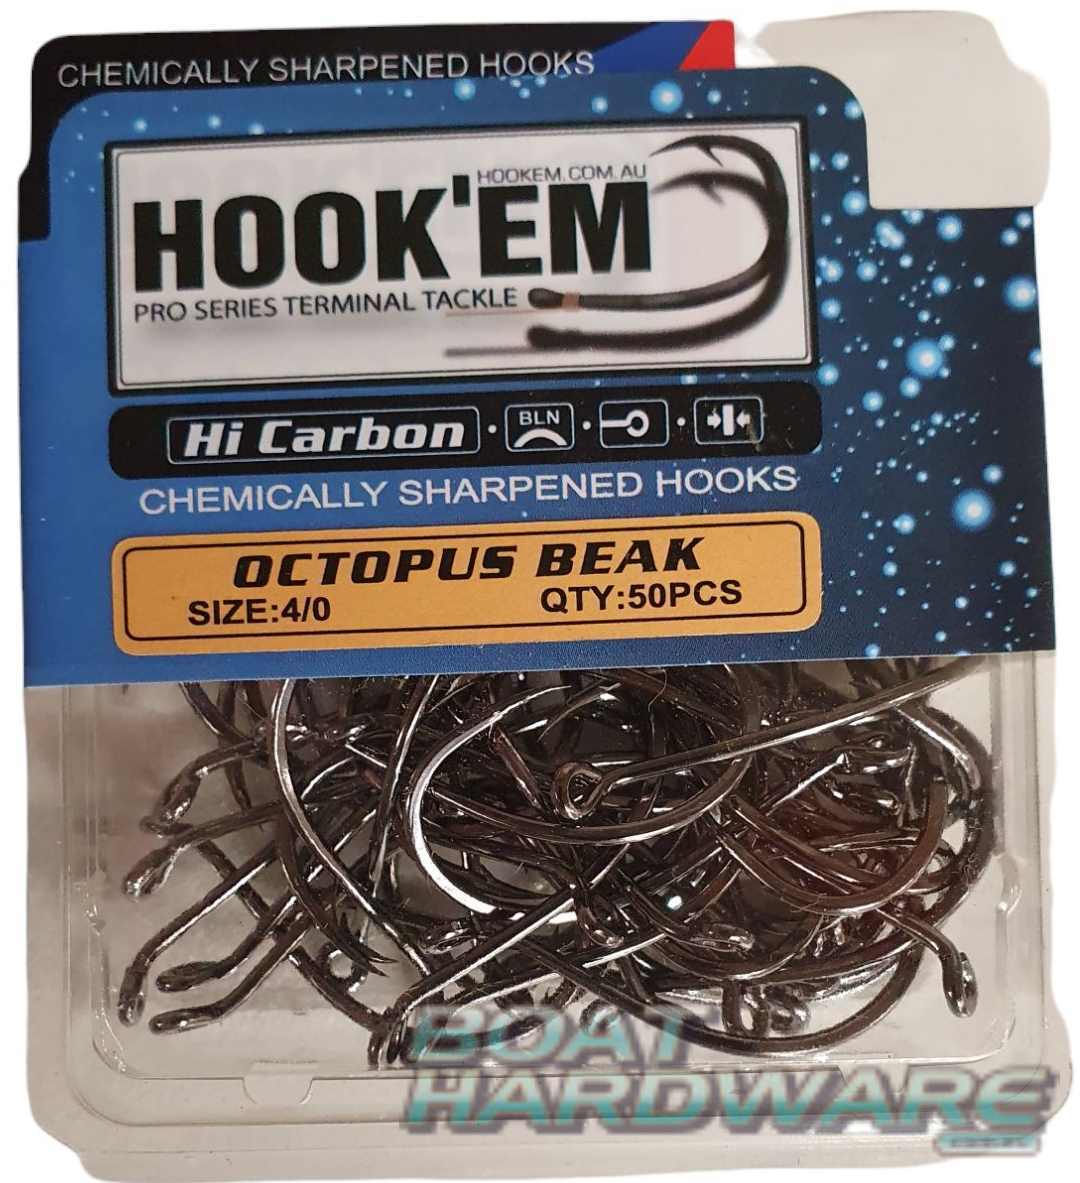 Size 4/0 Octopus Beak Hooks 50pce Blister Pack